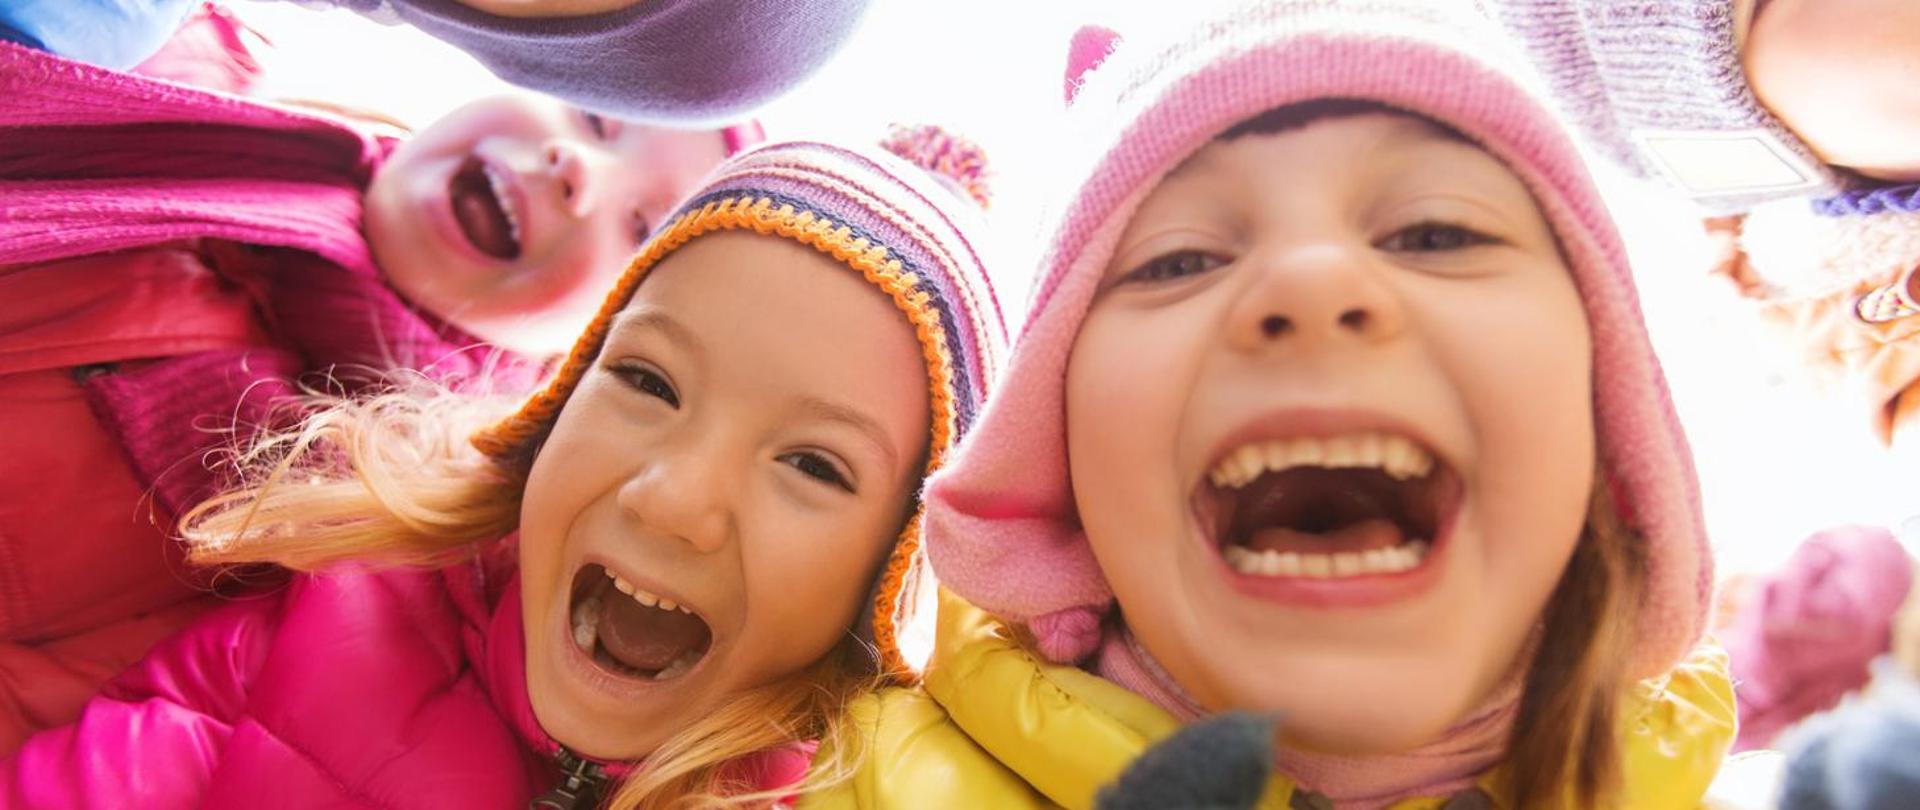 Na zdjęciu widać uśmiechnięte twarze trójki dzieci. Dzieci mają na głowie kolorowe czapki.